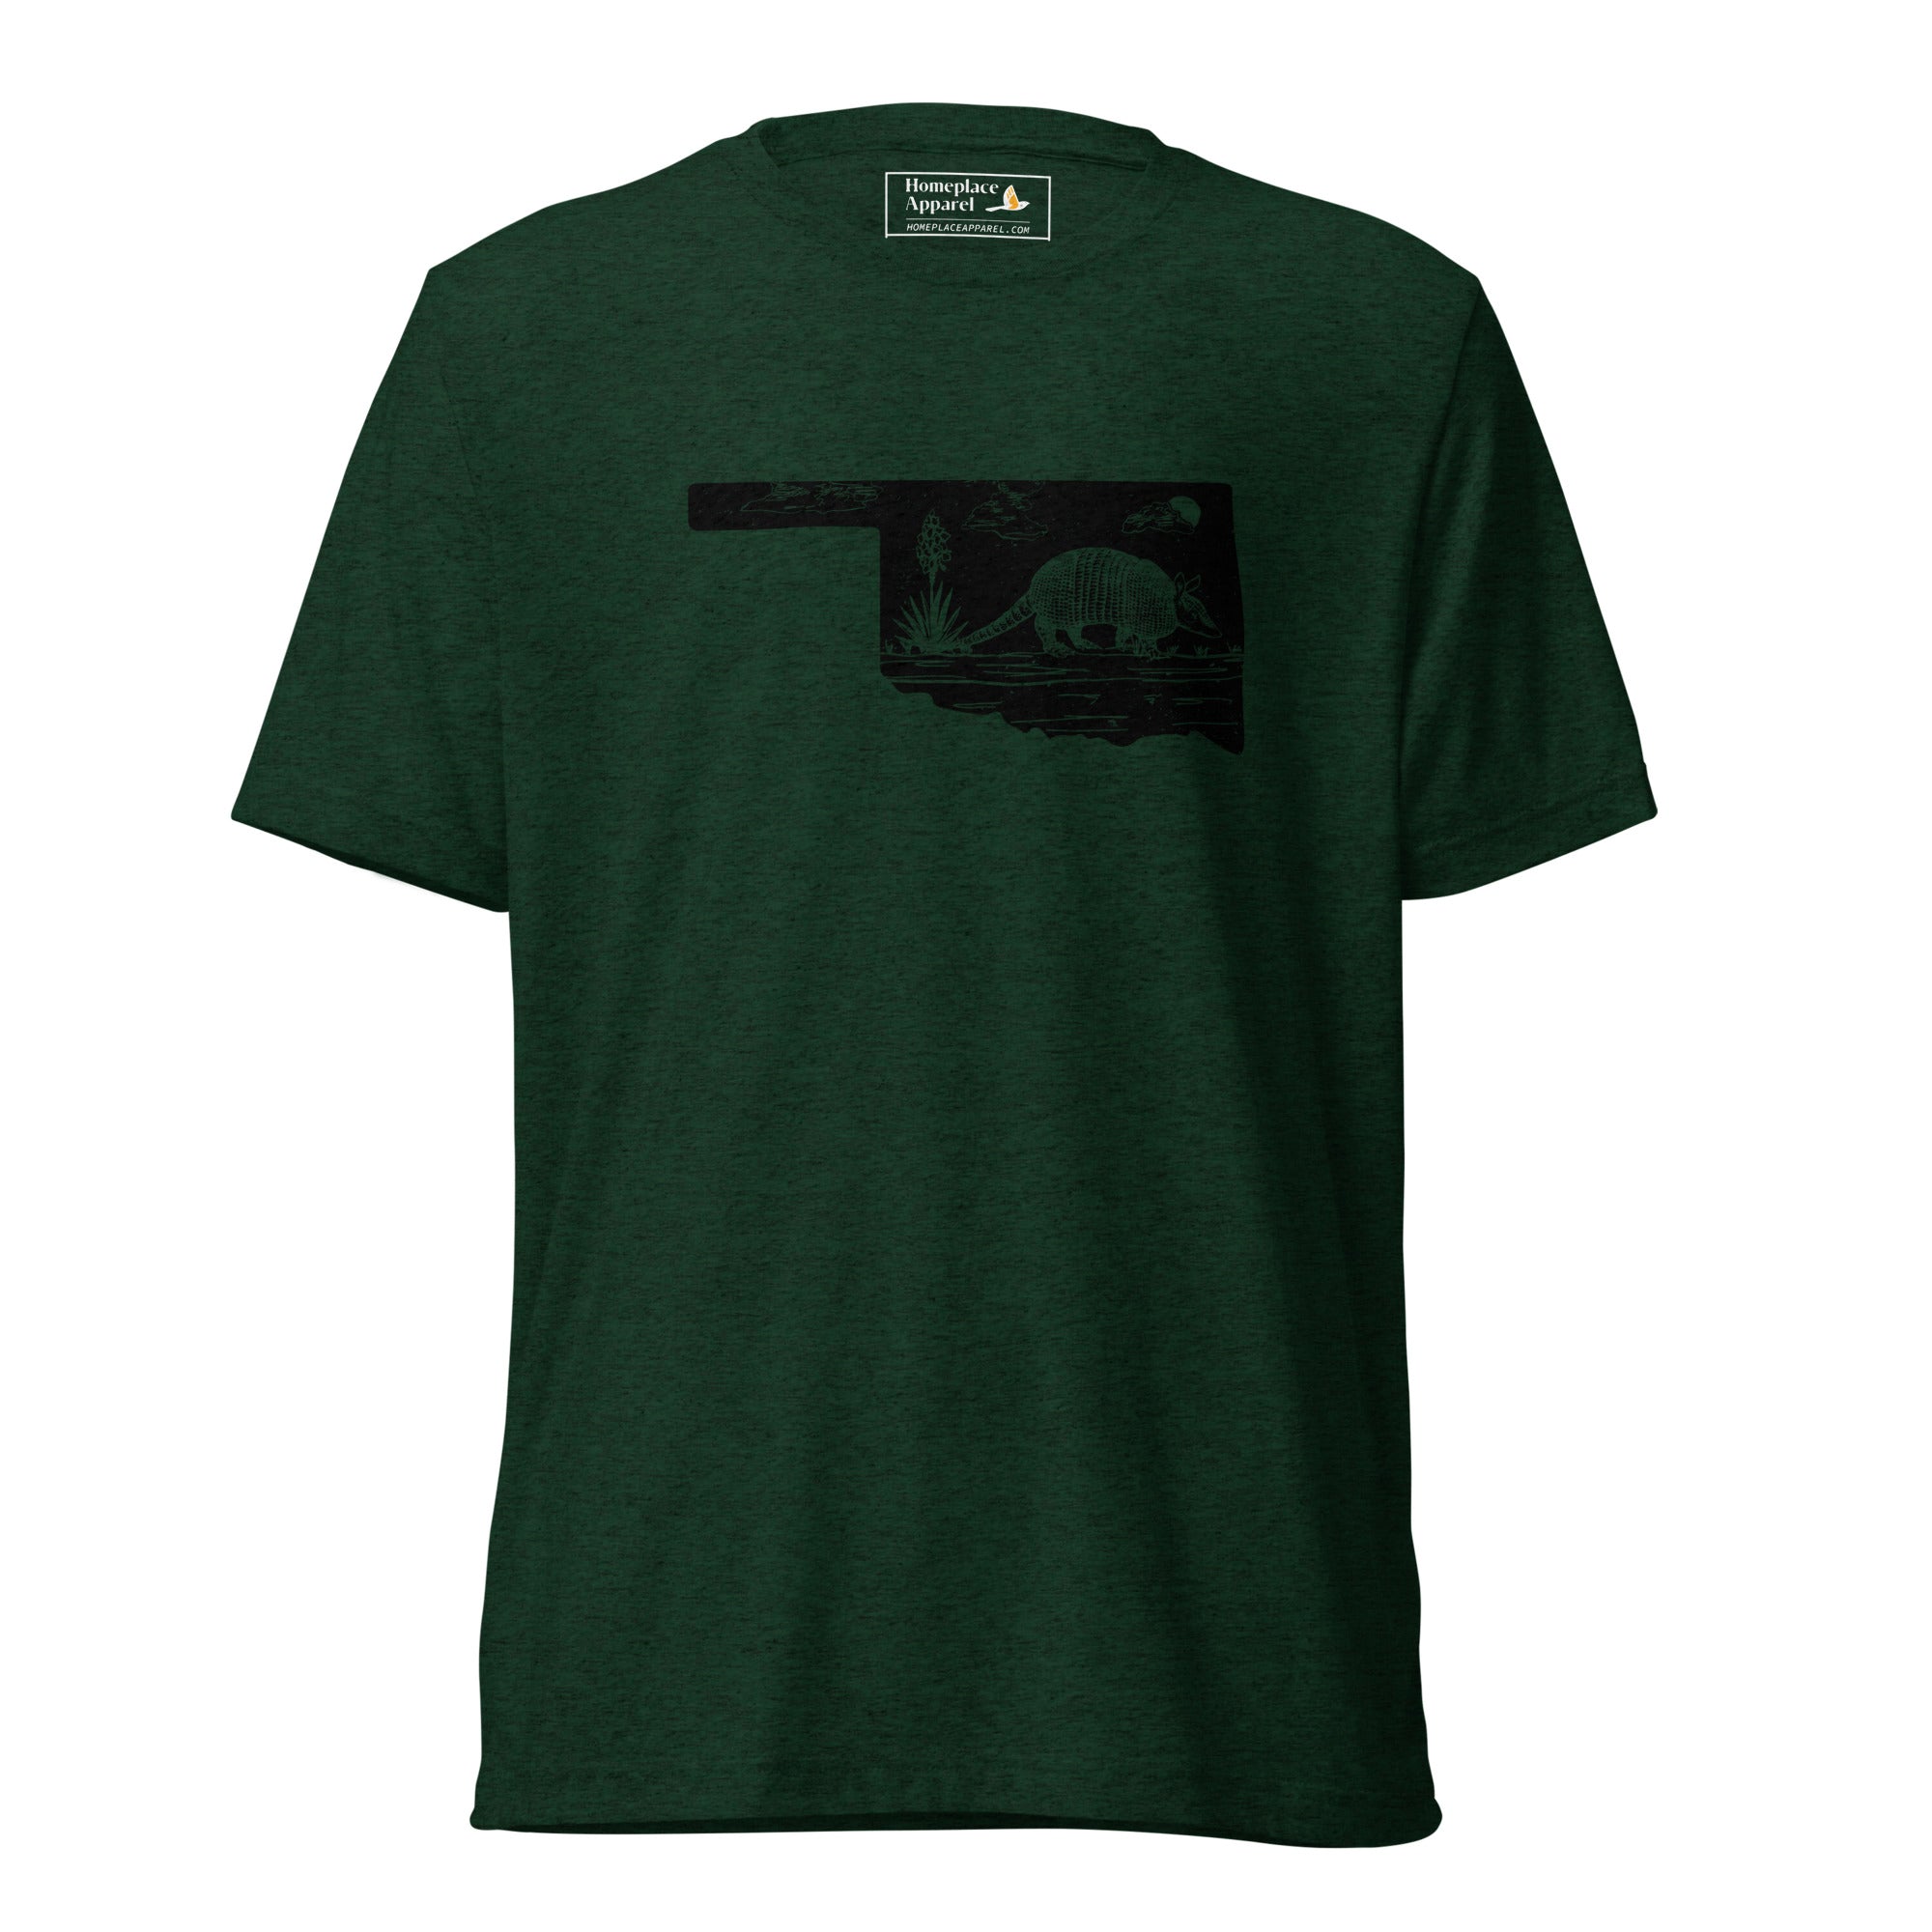 unisex-tri-blend-t-shirt-emerald-triblend-front-6512058a8e769.jpg